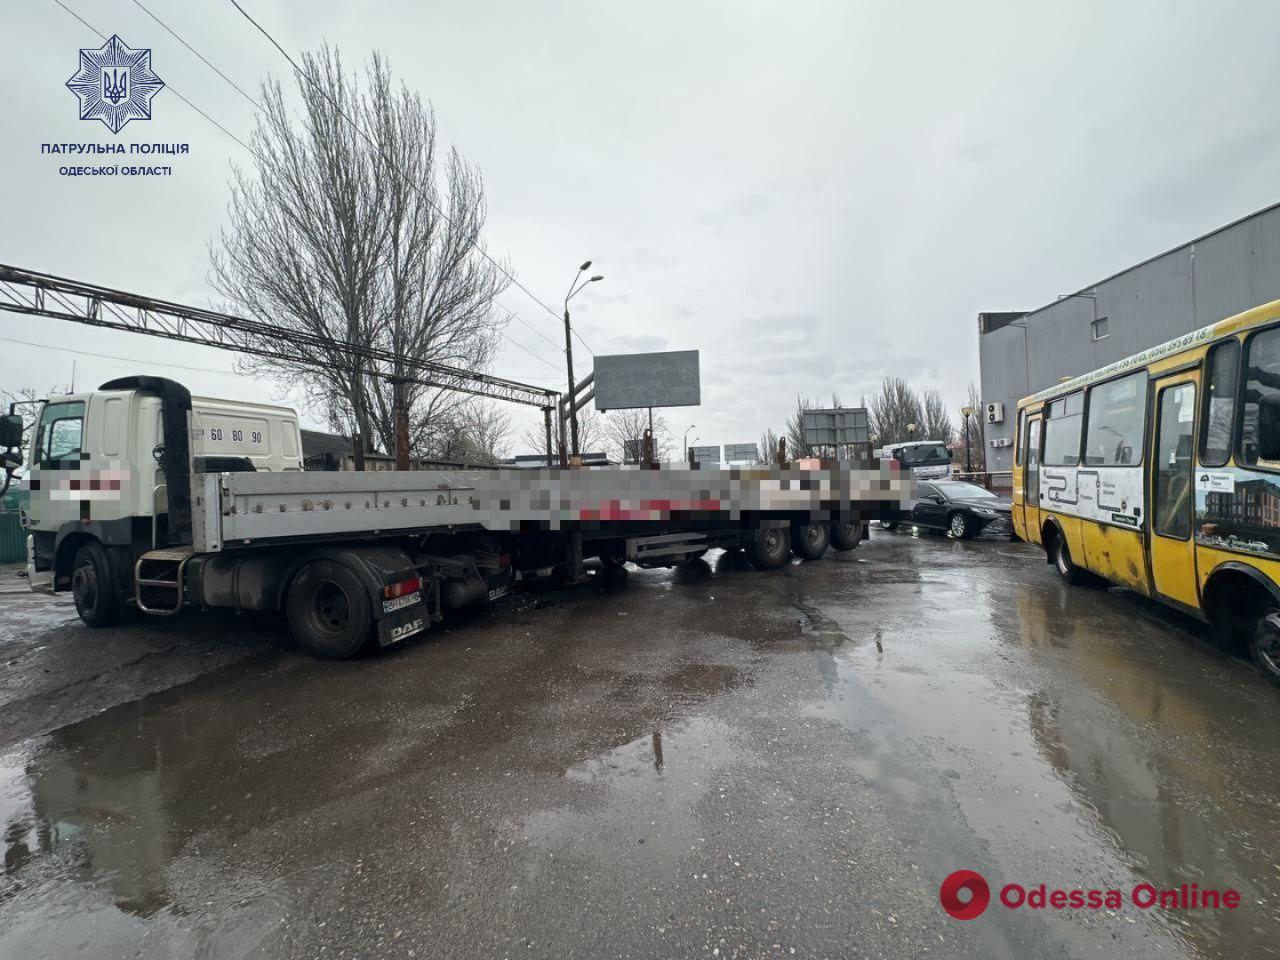 Одесса: в районе Пересыпи произошло ДТП с пострадавшим, образовалась сильная пробка (обновлено)